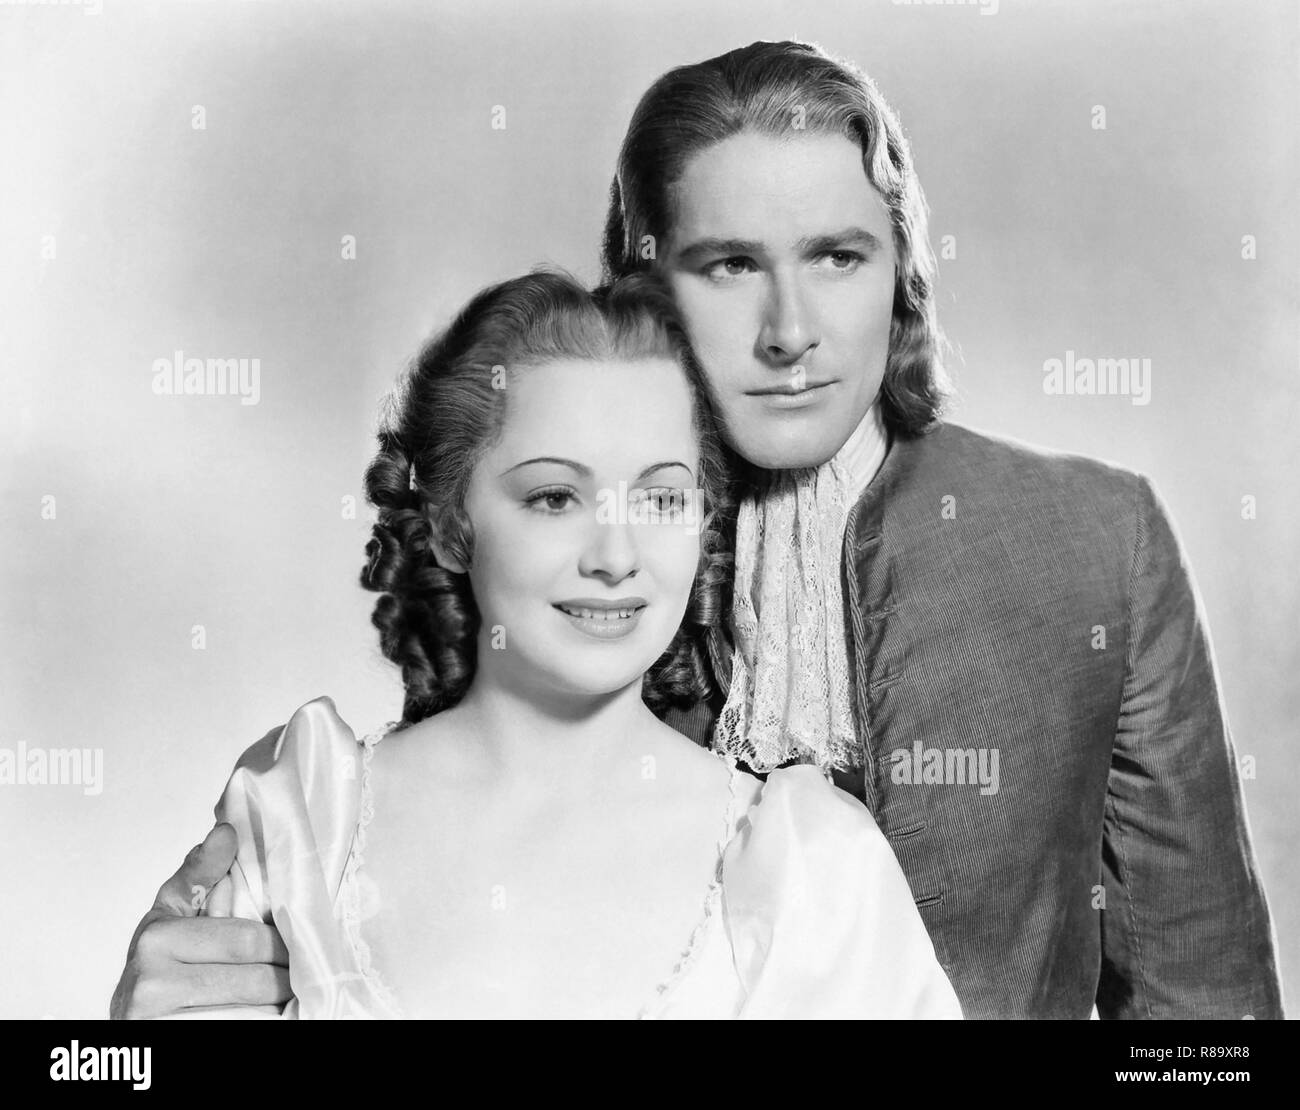 Capitano sangue Anno : 1935 USA Direttore : Michael Curtiz Errol Flynn, Olivia de Havilland Foto Stock